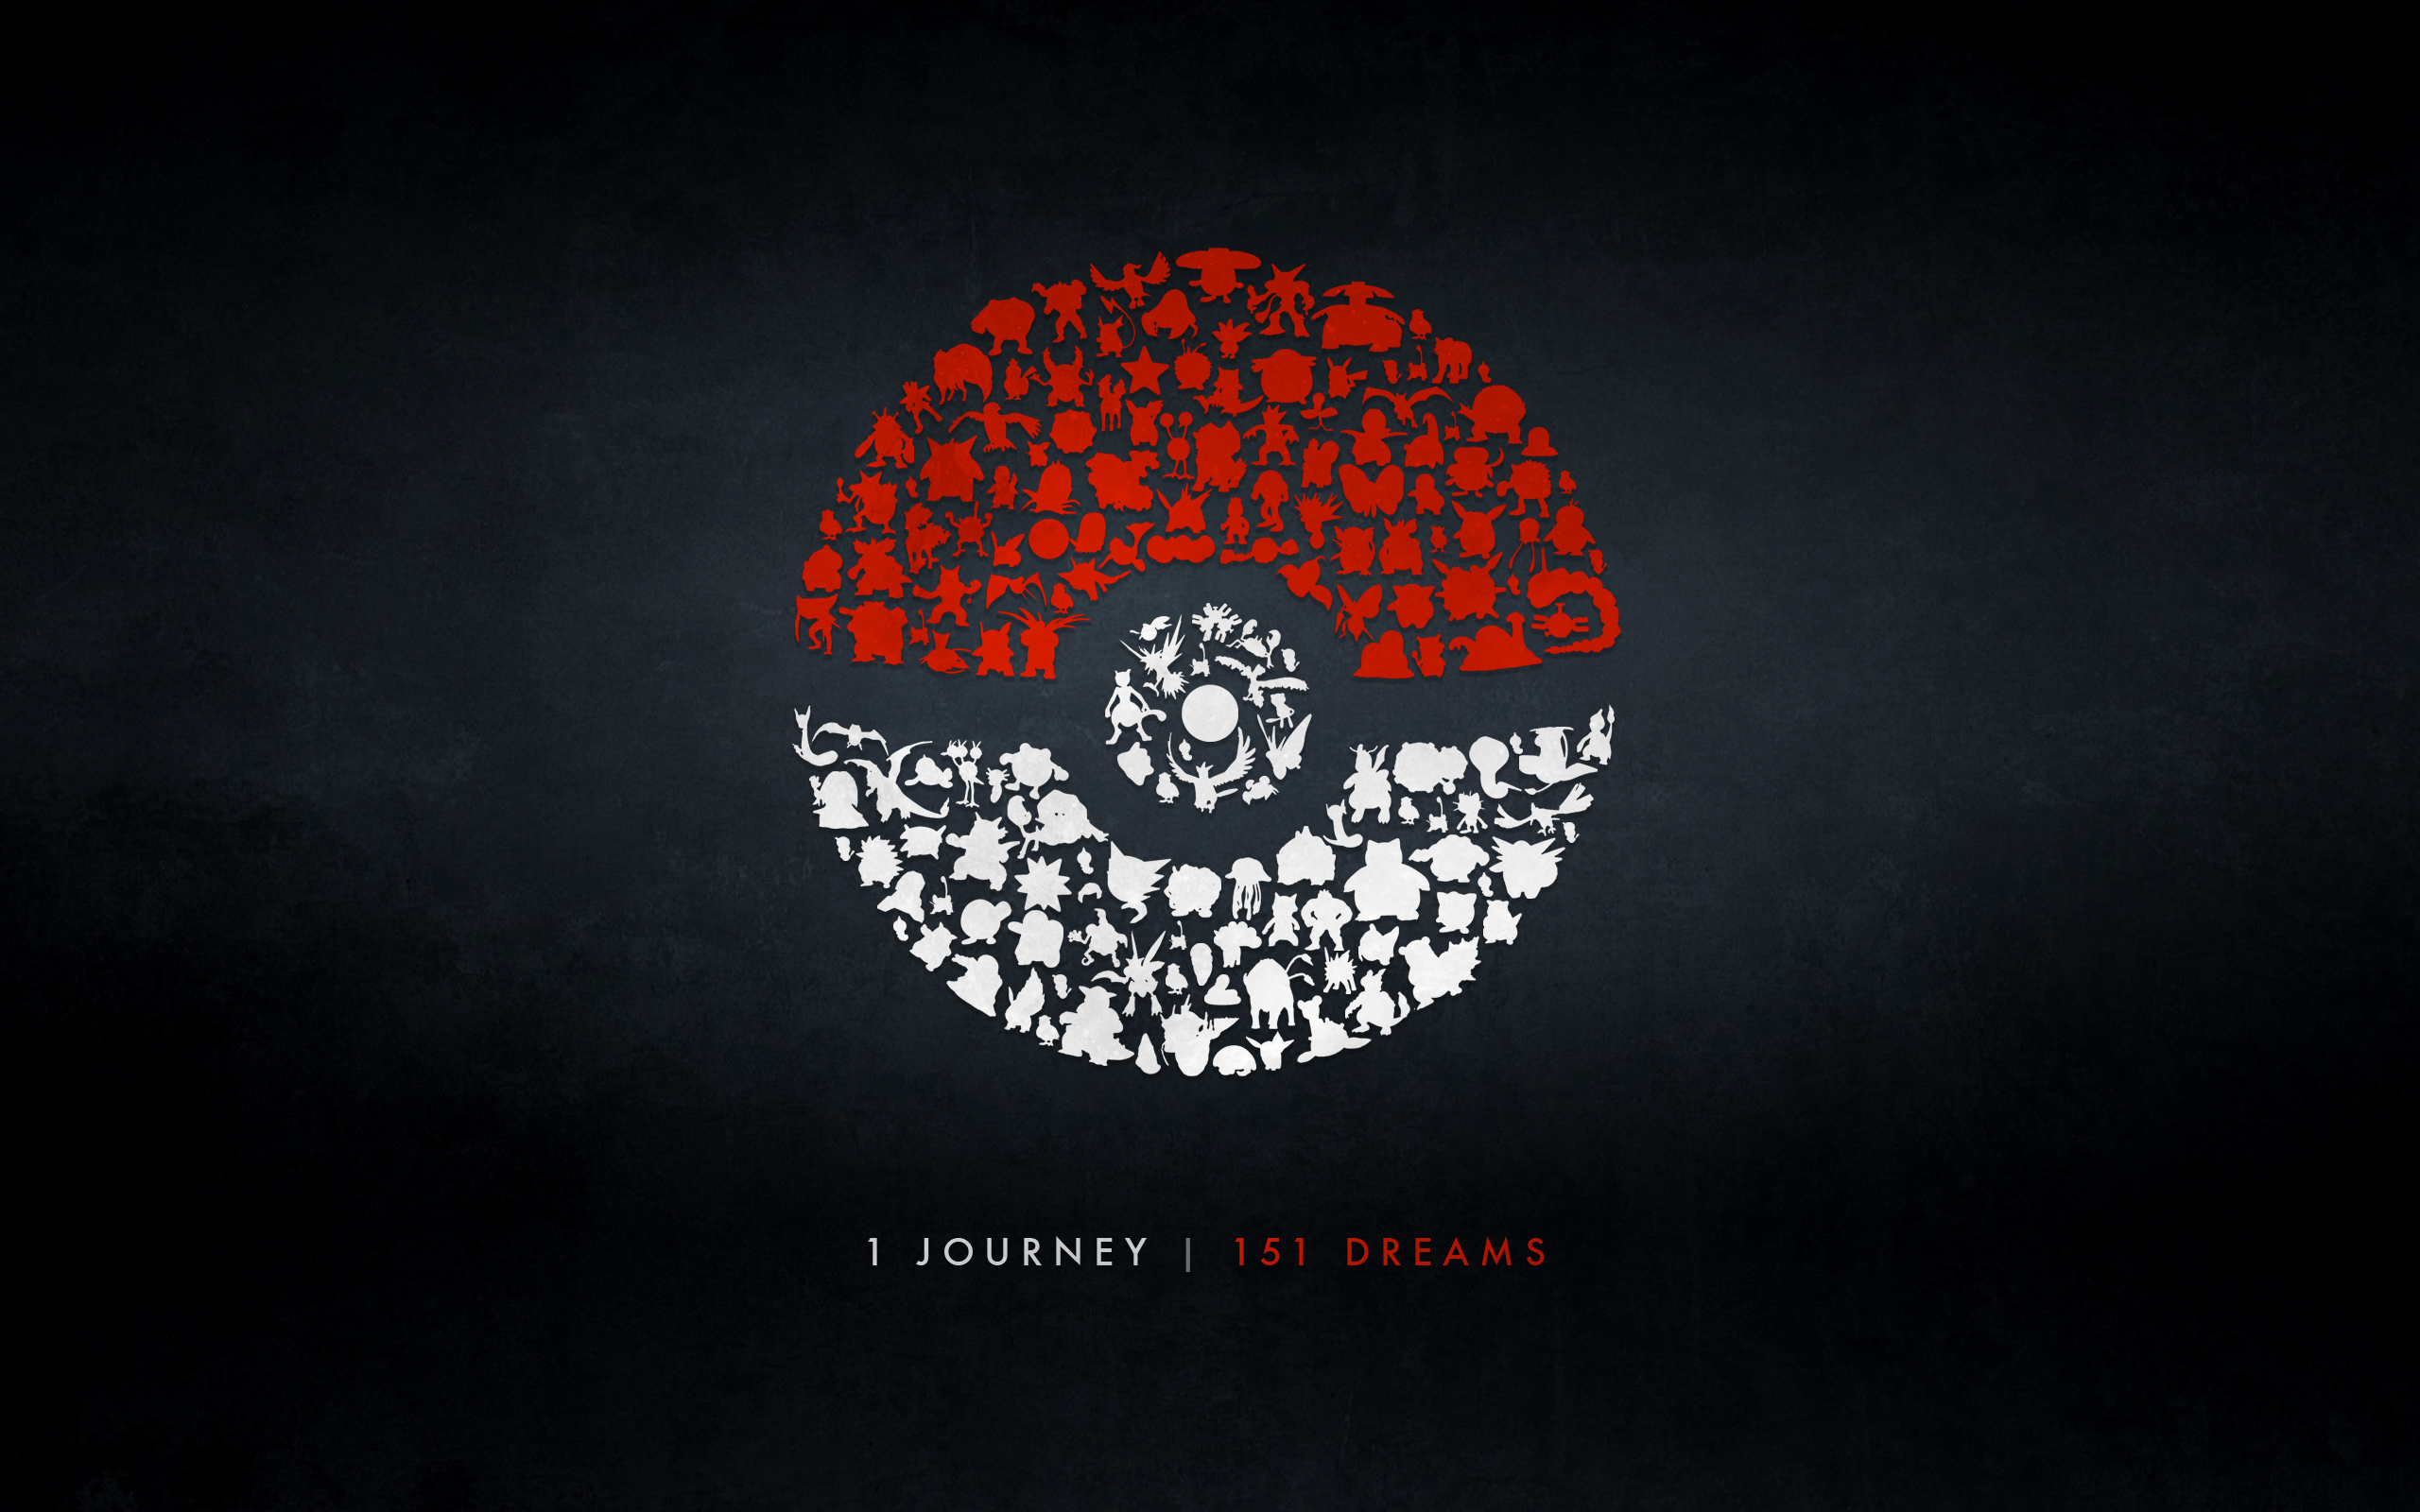 Pokemon Go Hd Wallpaper - 1 Journey 151 Dreams - HD Wallpaper 